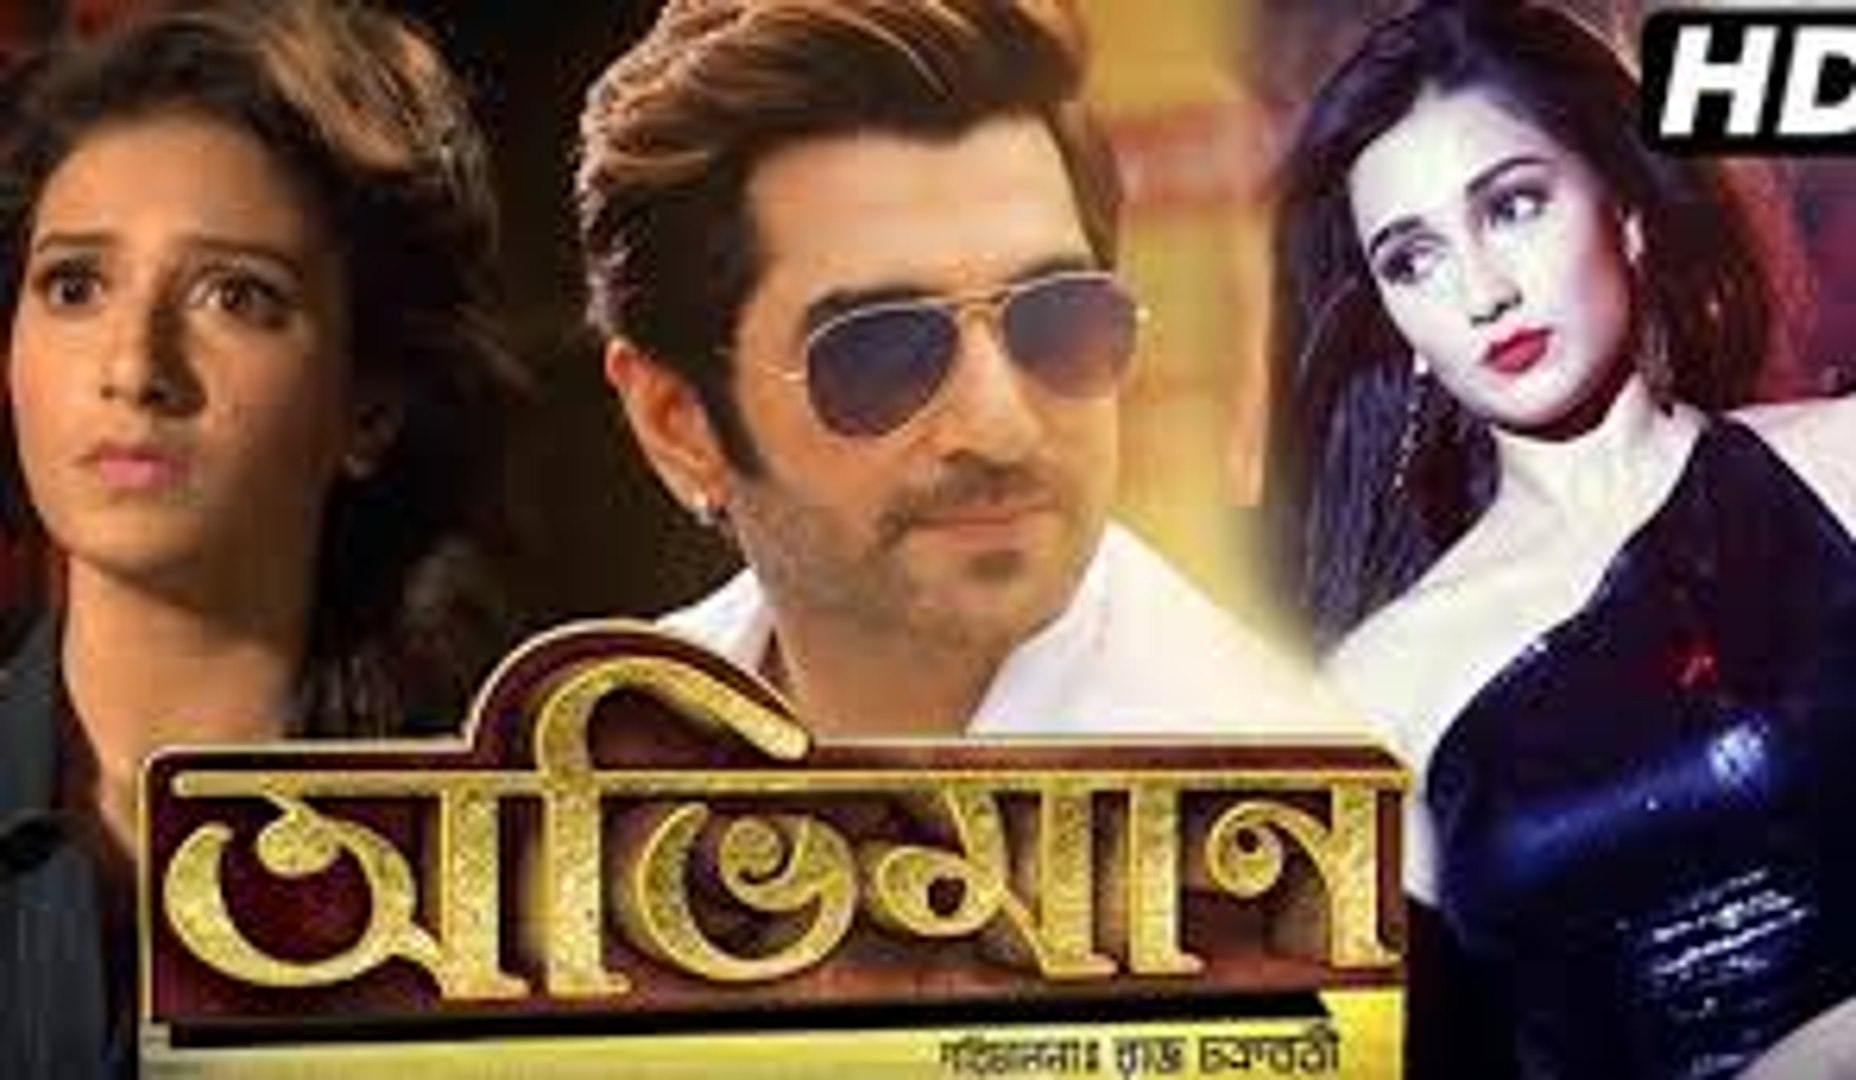 Abhimaan full movie bengali